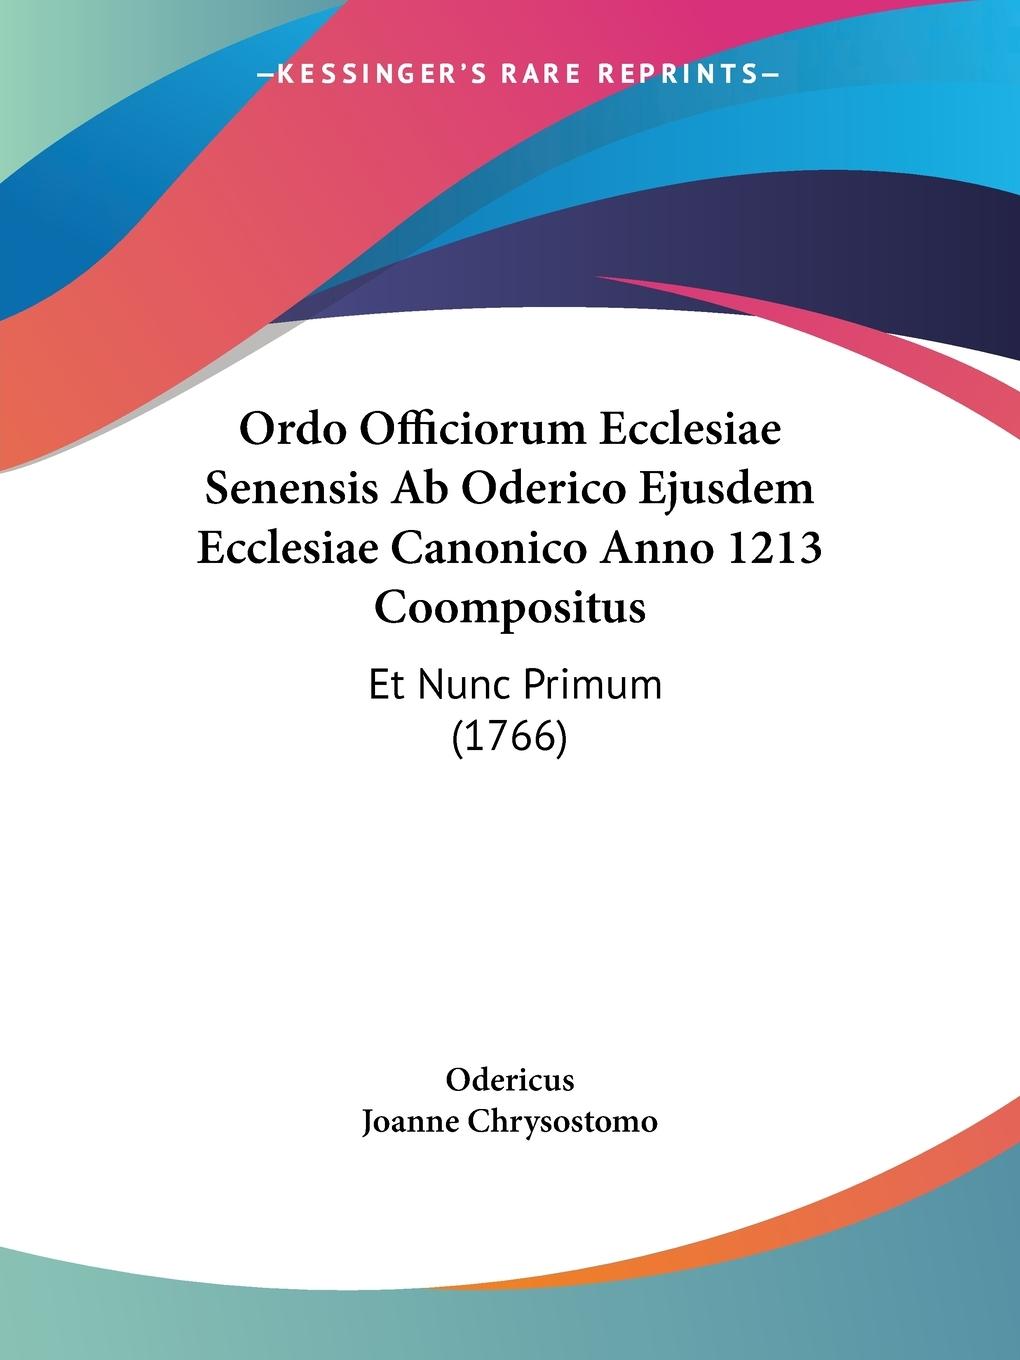 Ordo Officiorum Ecclesiae Senensis Ab Oderico Ejusdem Ecclesiae Canonico Anno 1213 Coompositus - Odericus Joanne Chrysostomo